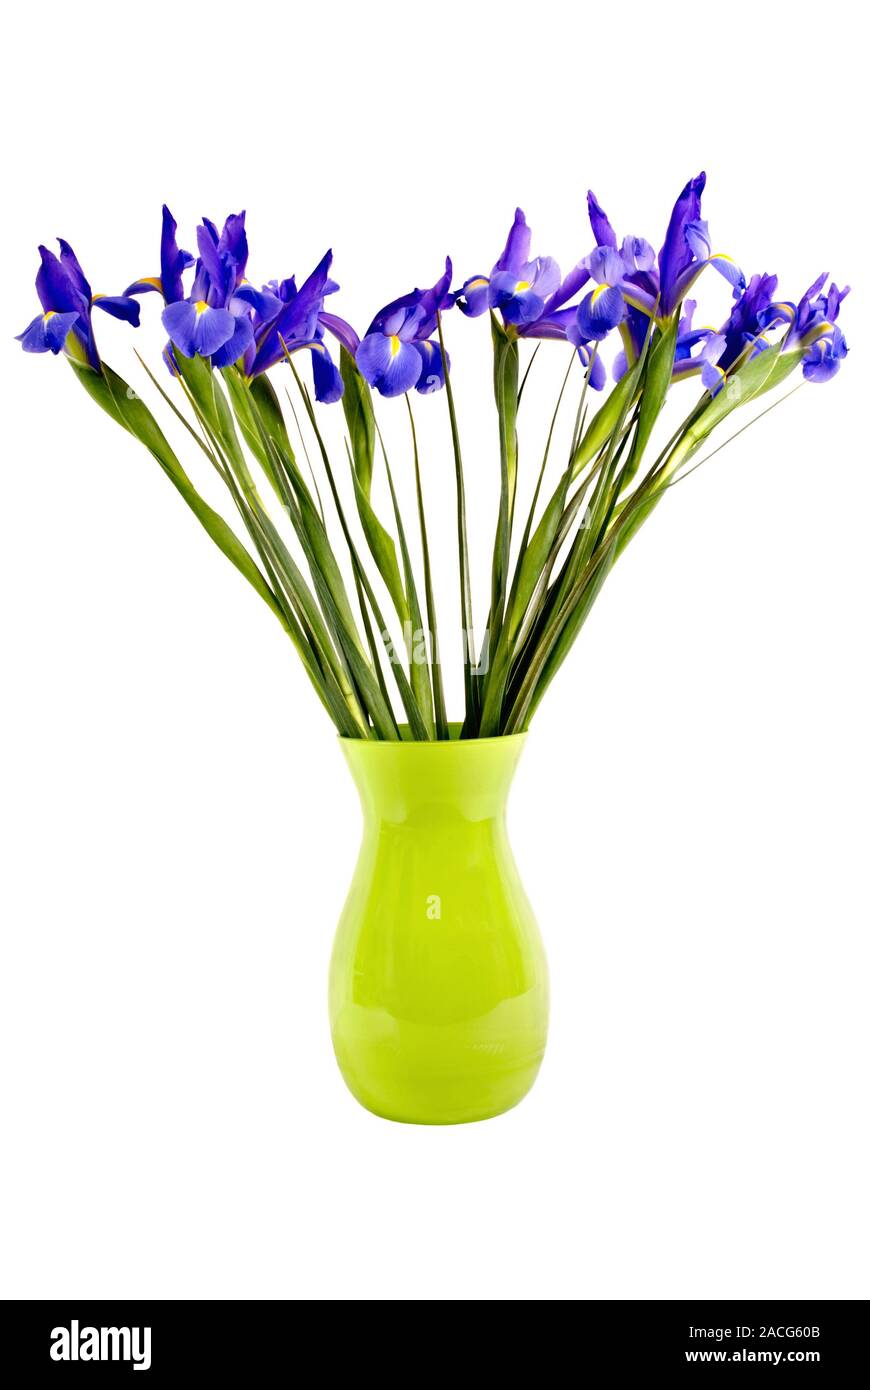 Un bouquet frais de drapeau bleu iris fleurs avec de longues tiges dans un vase de verre vert lime. Isolé sur fond blanc. Banque D'Images